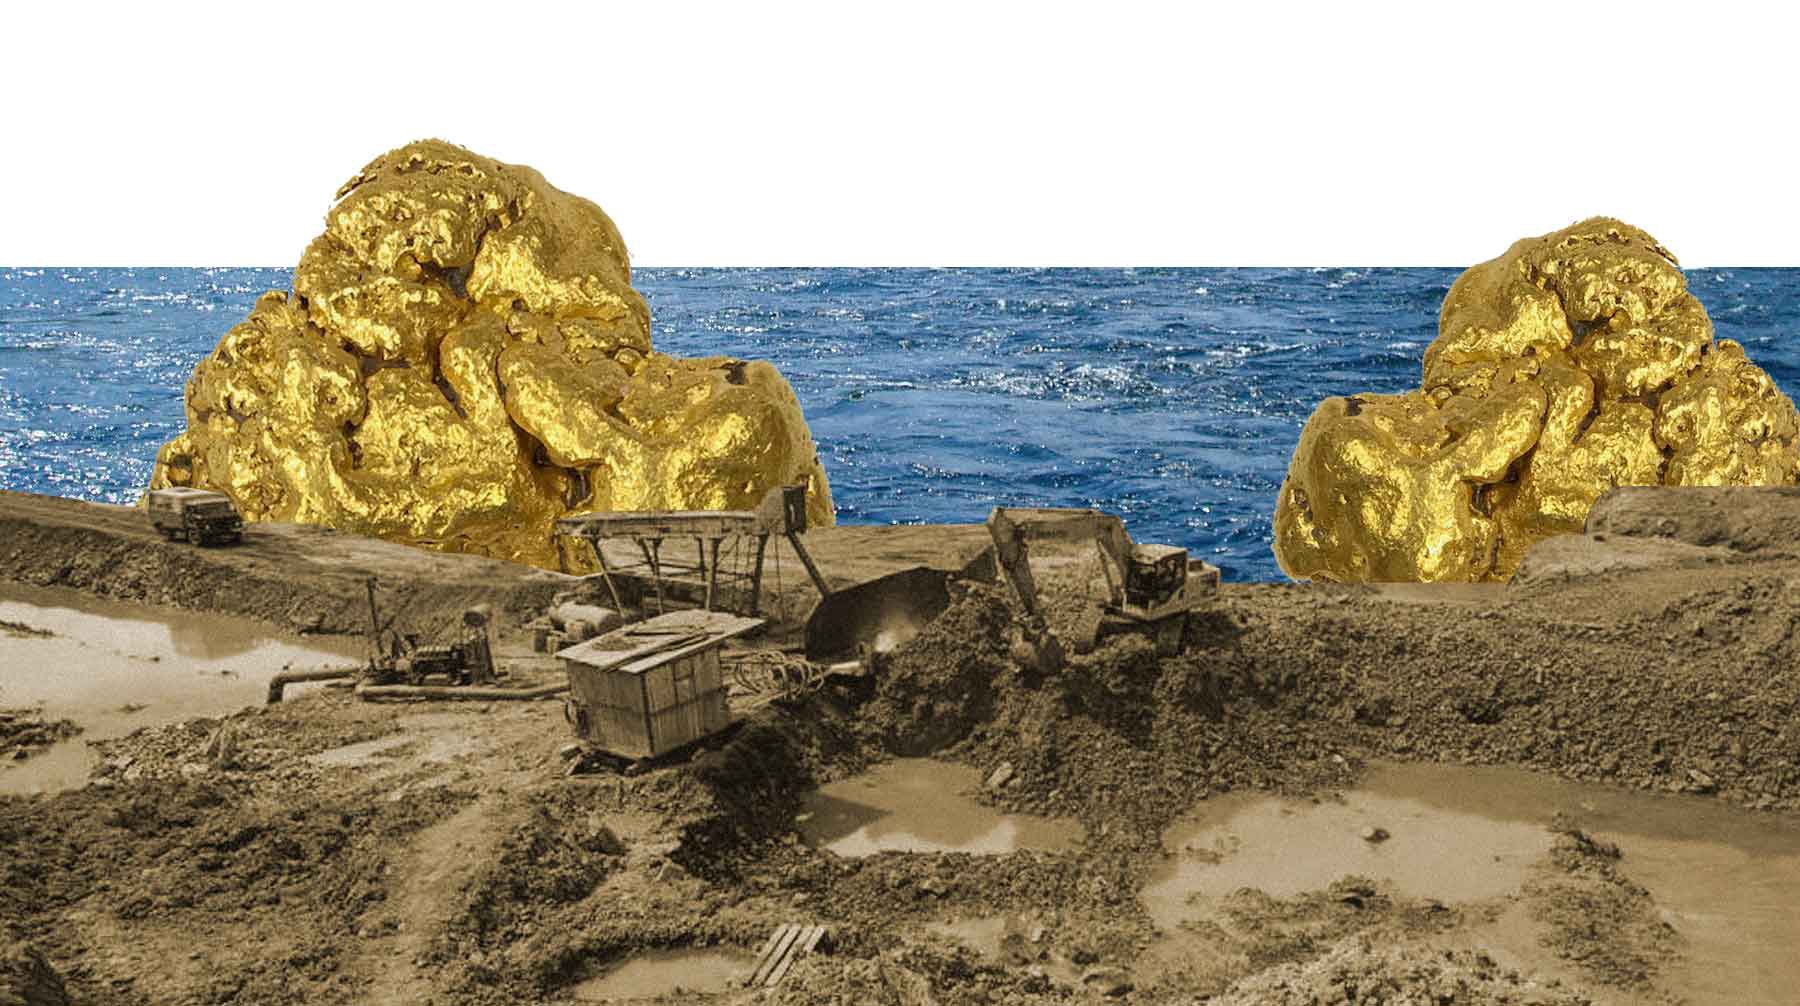 Dailystorm - Золото дороже человека: СПЧ и ОНФ выступают против золотодобычи в Алтайском крае